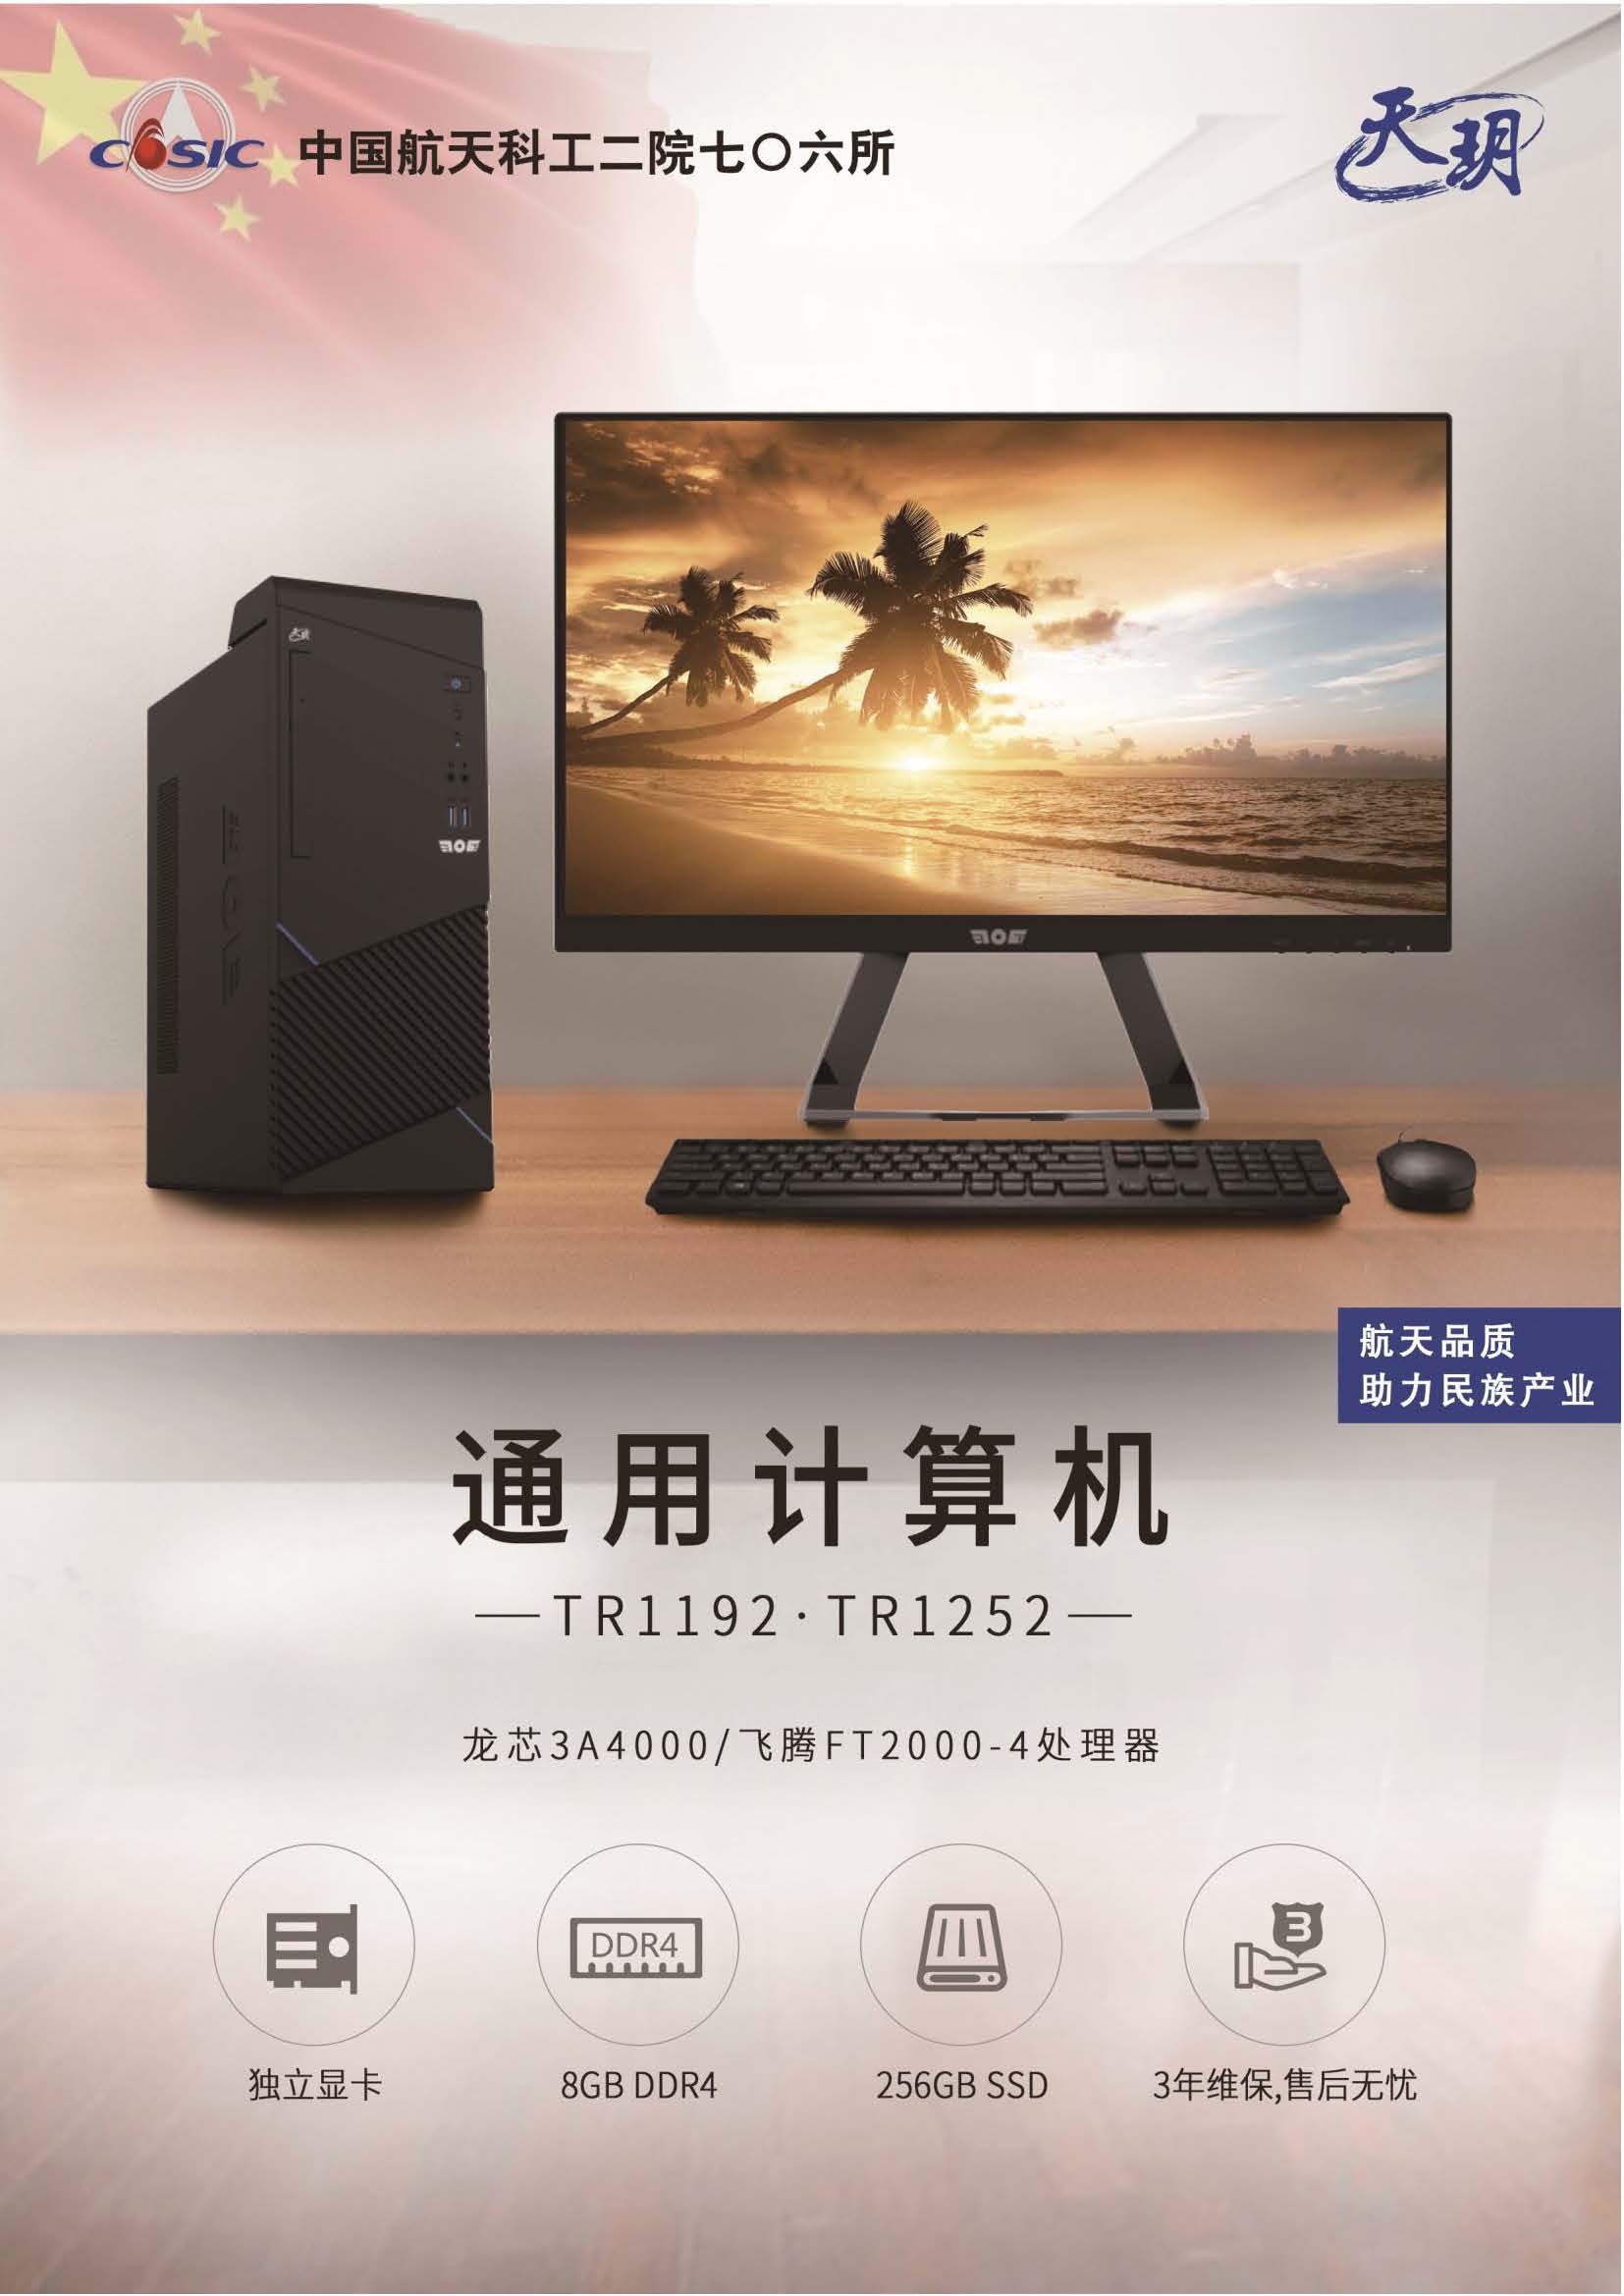 天玥 TR1252 台式电脑 飞腾FT2000/4 8G 256G 23.8英寸显示器 (5)